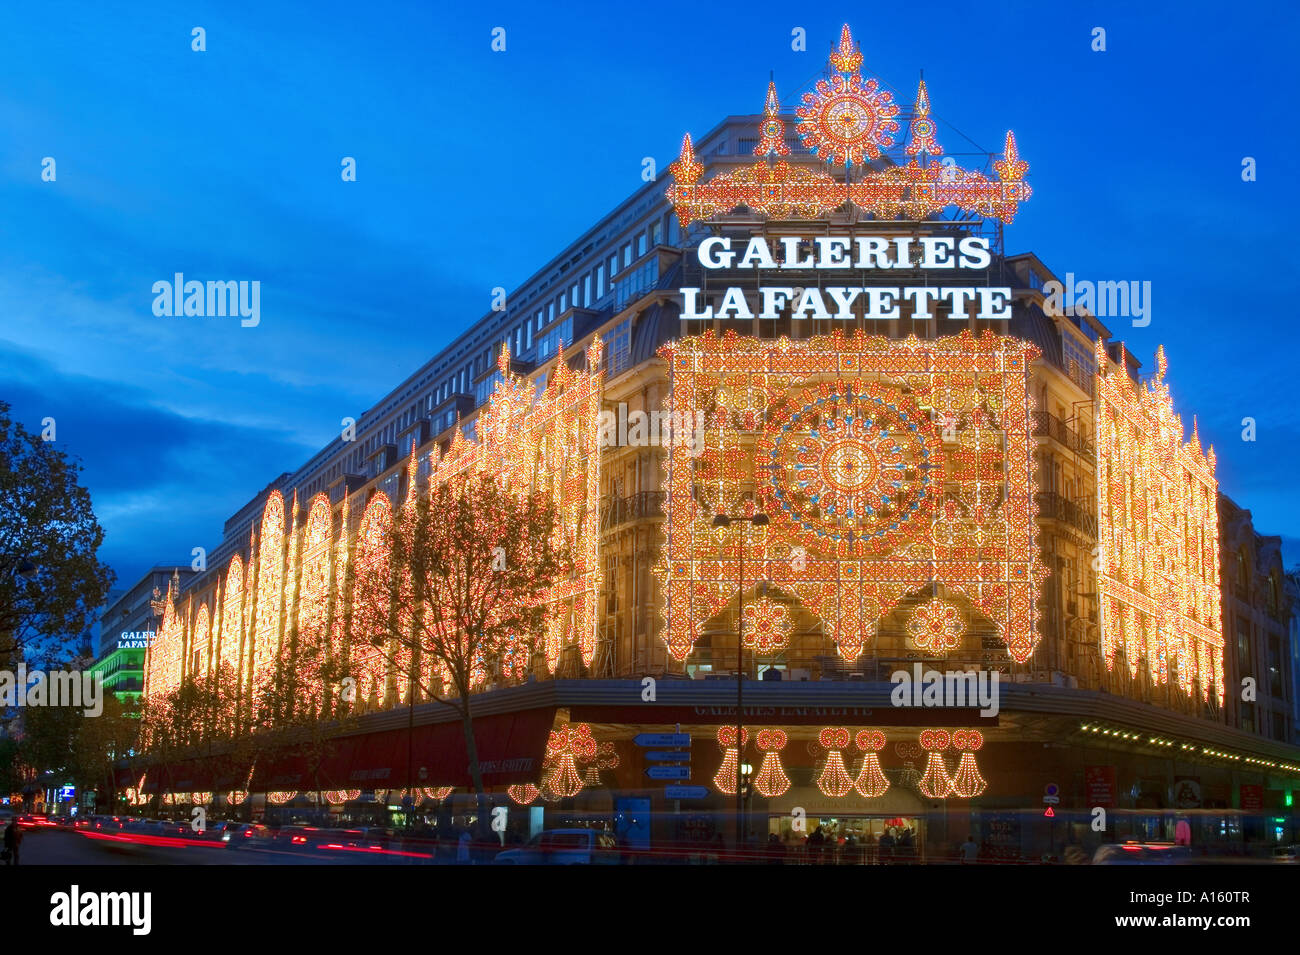 GALERIES LAFAYETTE - PARIS - FRANCE Stock Photo